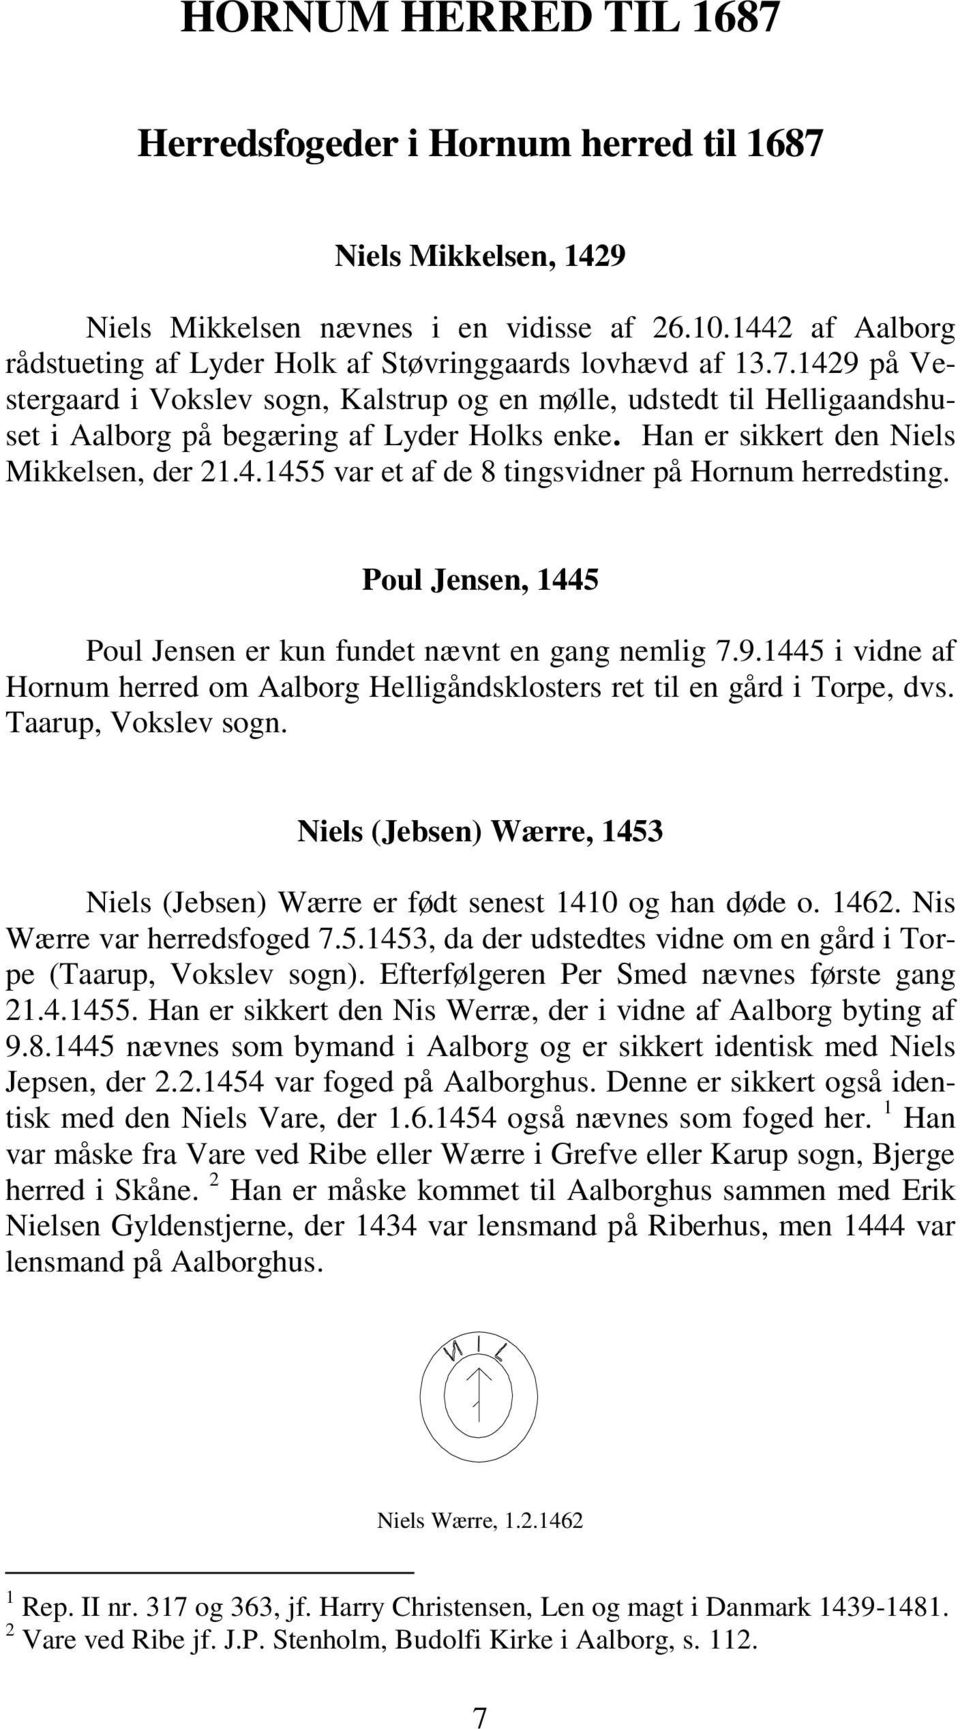 1429 på Vestergaard i Vokslev sogn, Kalstrup og en mølle, udstedt til Helligaandshuset i Aalborg på begæring af Lyder Holks enke. Han er sikkert den Niels Mikkelsen, der 21.4.1455 var et af de 8 tingsvidner på Hornum herredsting.